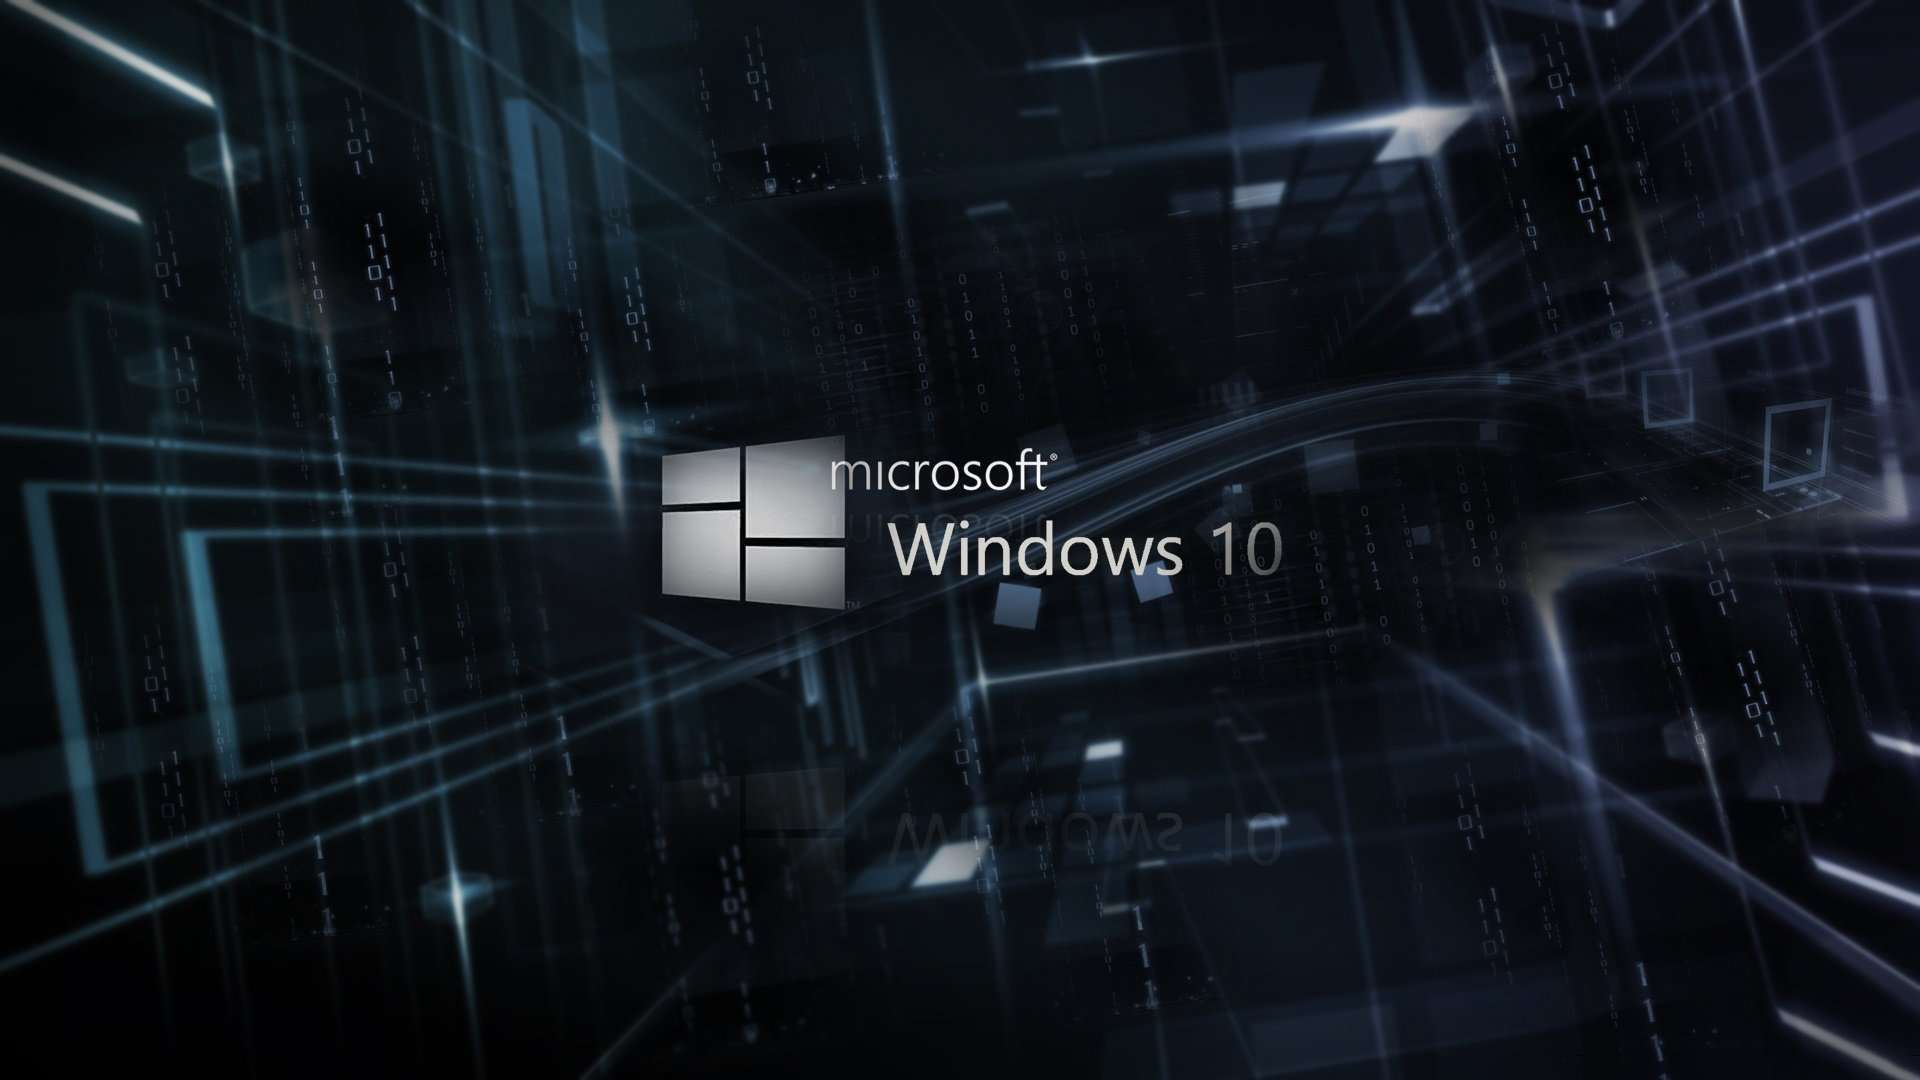 Download now Windows 10 Wallpaper For PC 1080p Read description info